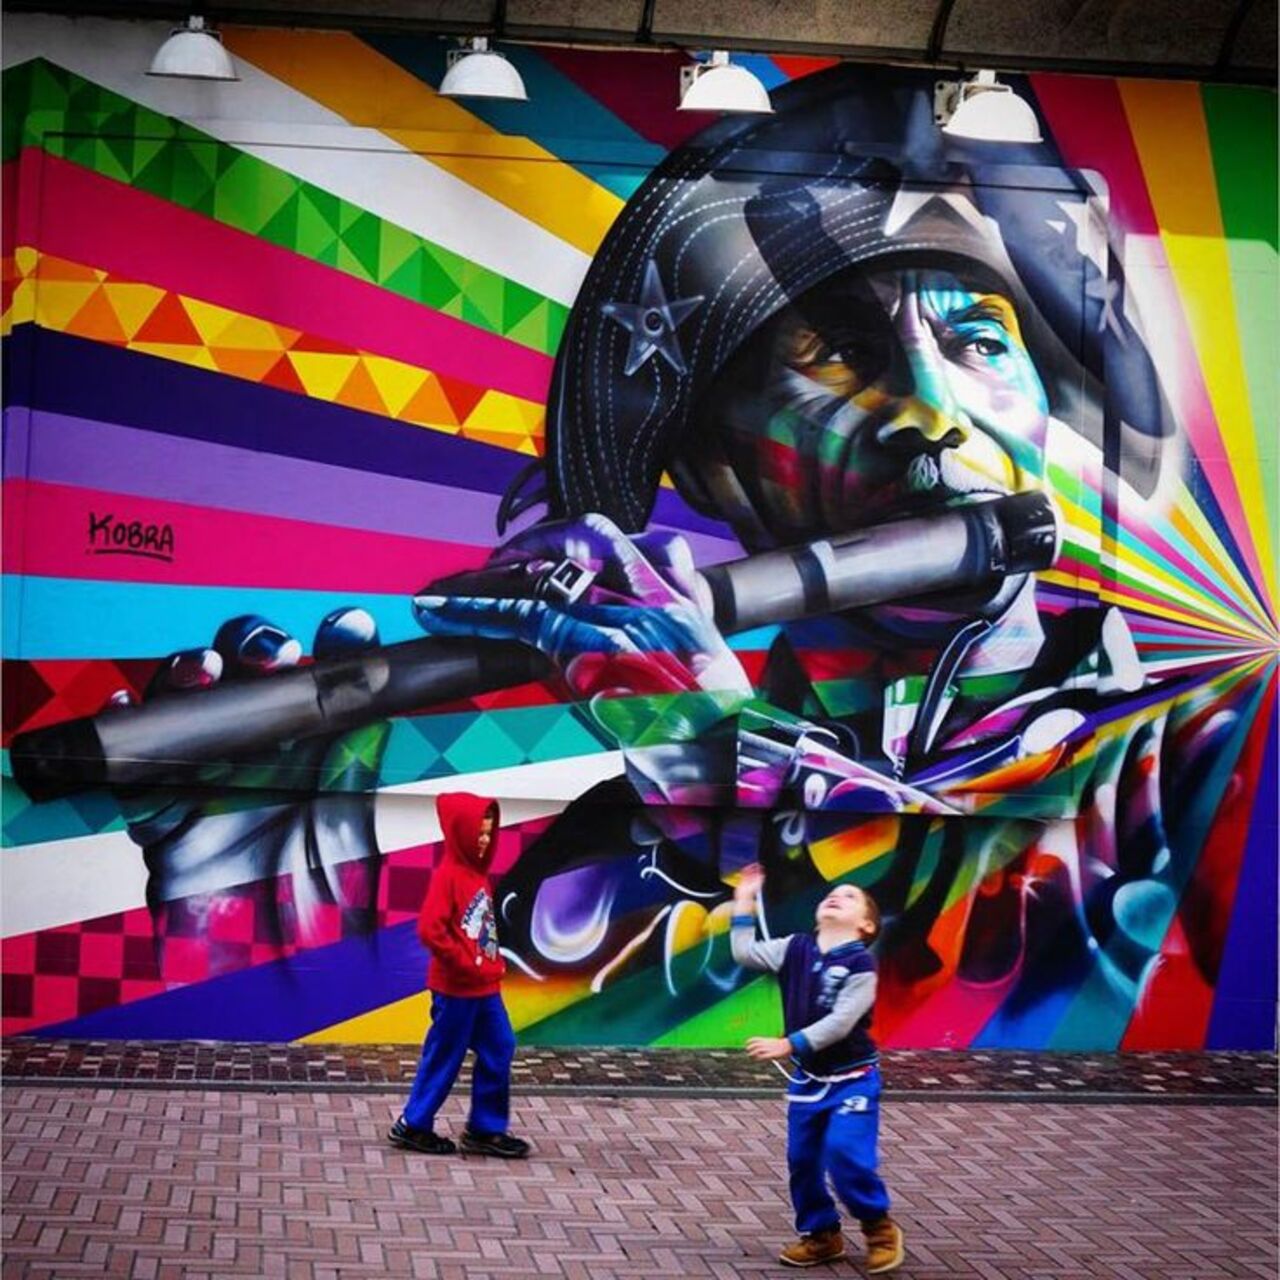 The Kaleidoscope Street Art Portraits of Eduardo Kobra#streetart #mural #graffiti #art https://t.co/nFNsOg8nrM